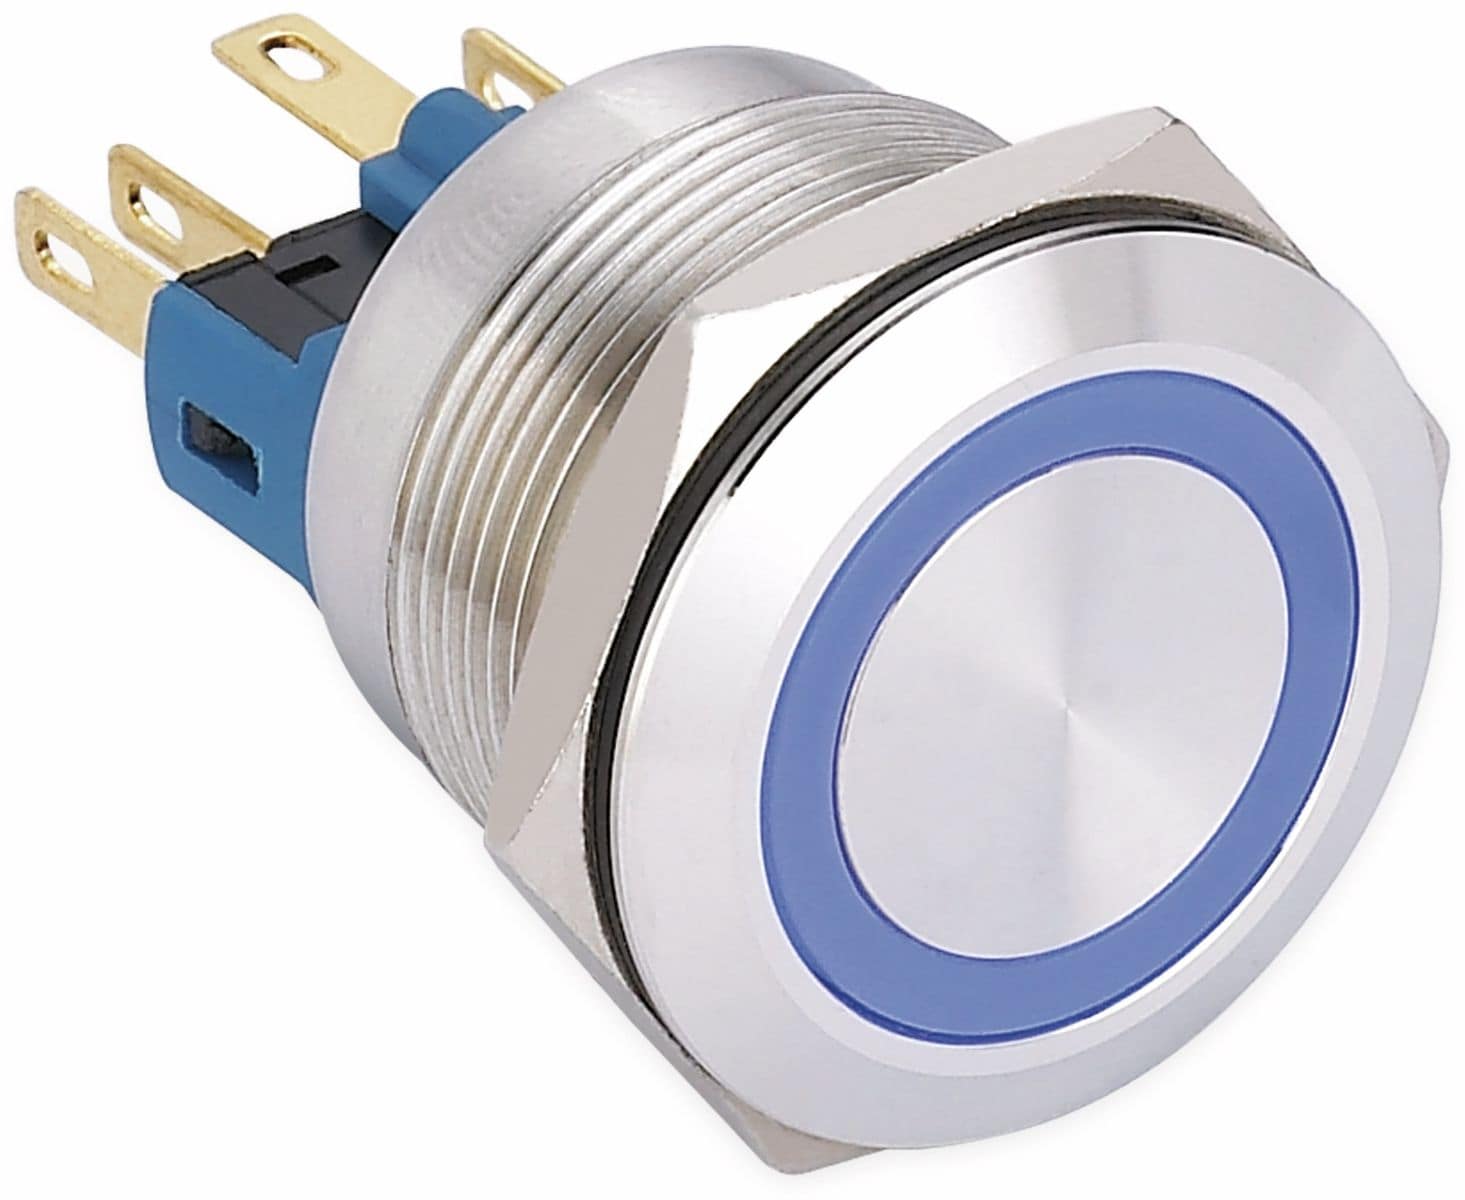 ONPOW Schalter, 24 V/DC, 1x Off/(On), Beleuchtung blau, Lötanschluss, flach rund, Edelstahl, 22 mm von ONPOW